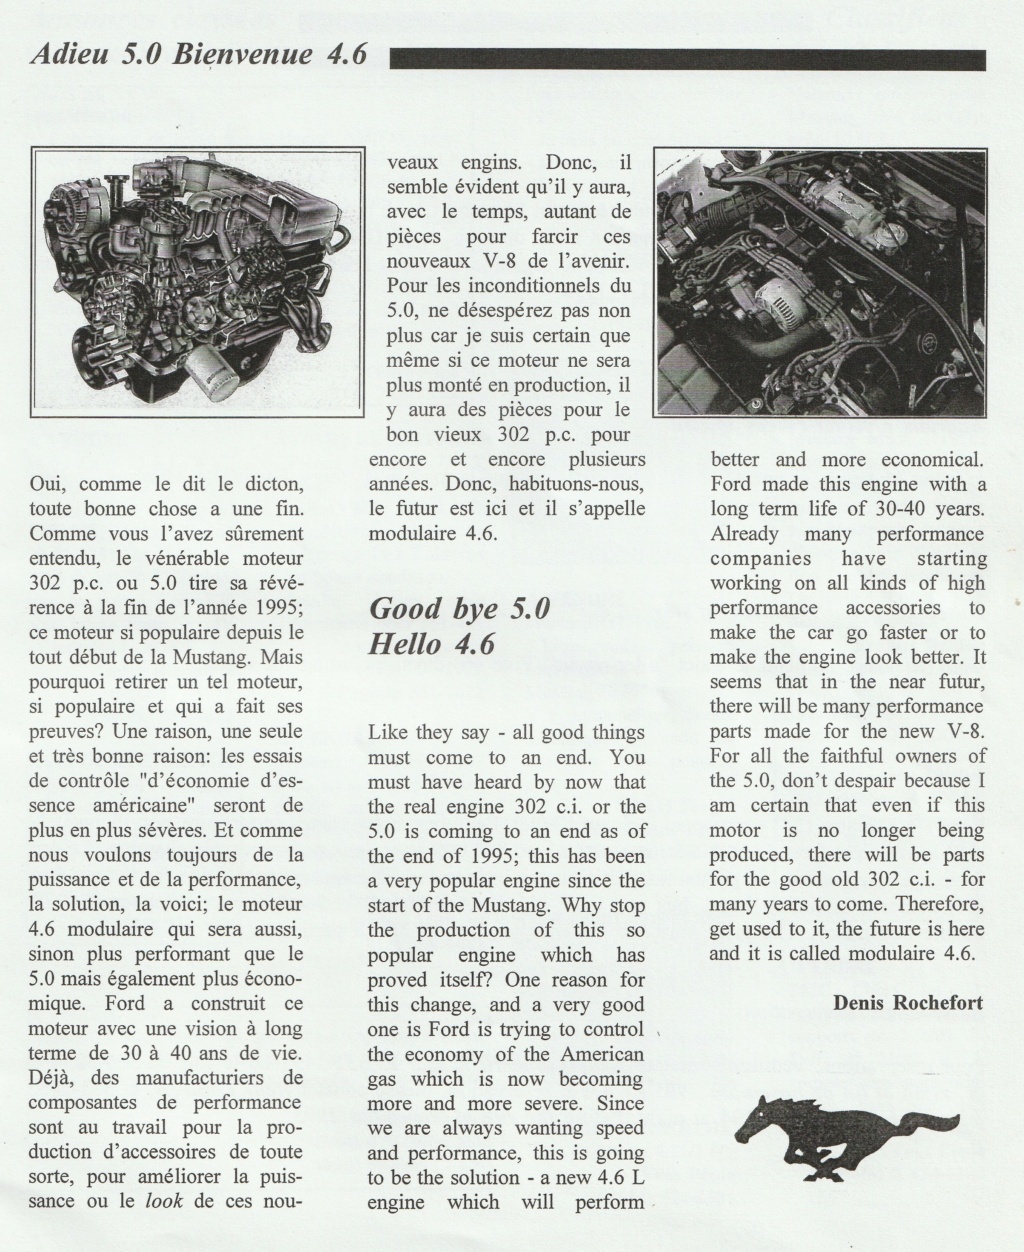 Montréal Mustang dans le temps! 1981 à aujourd'hui (Histoire en photos) - Page 8 Img_2351